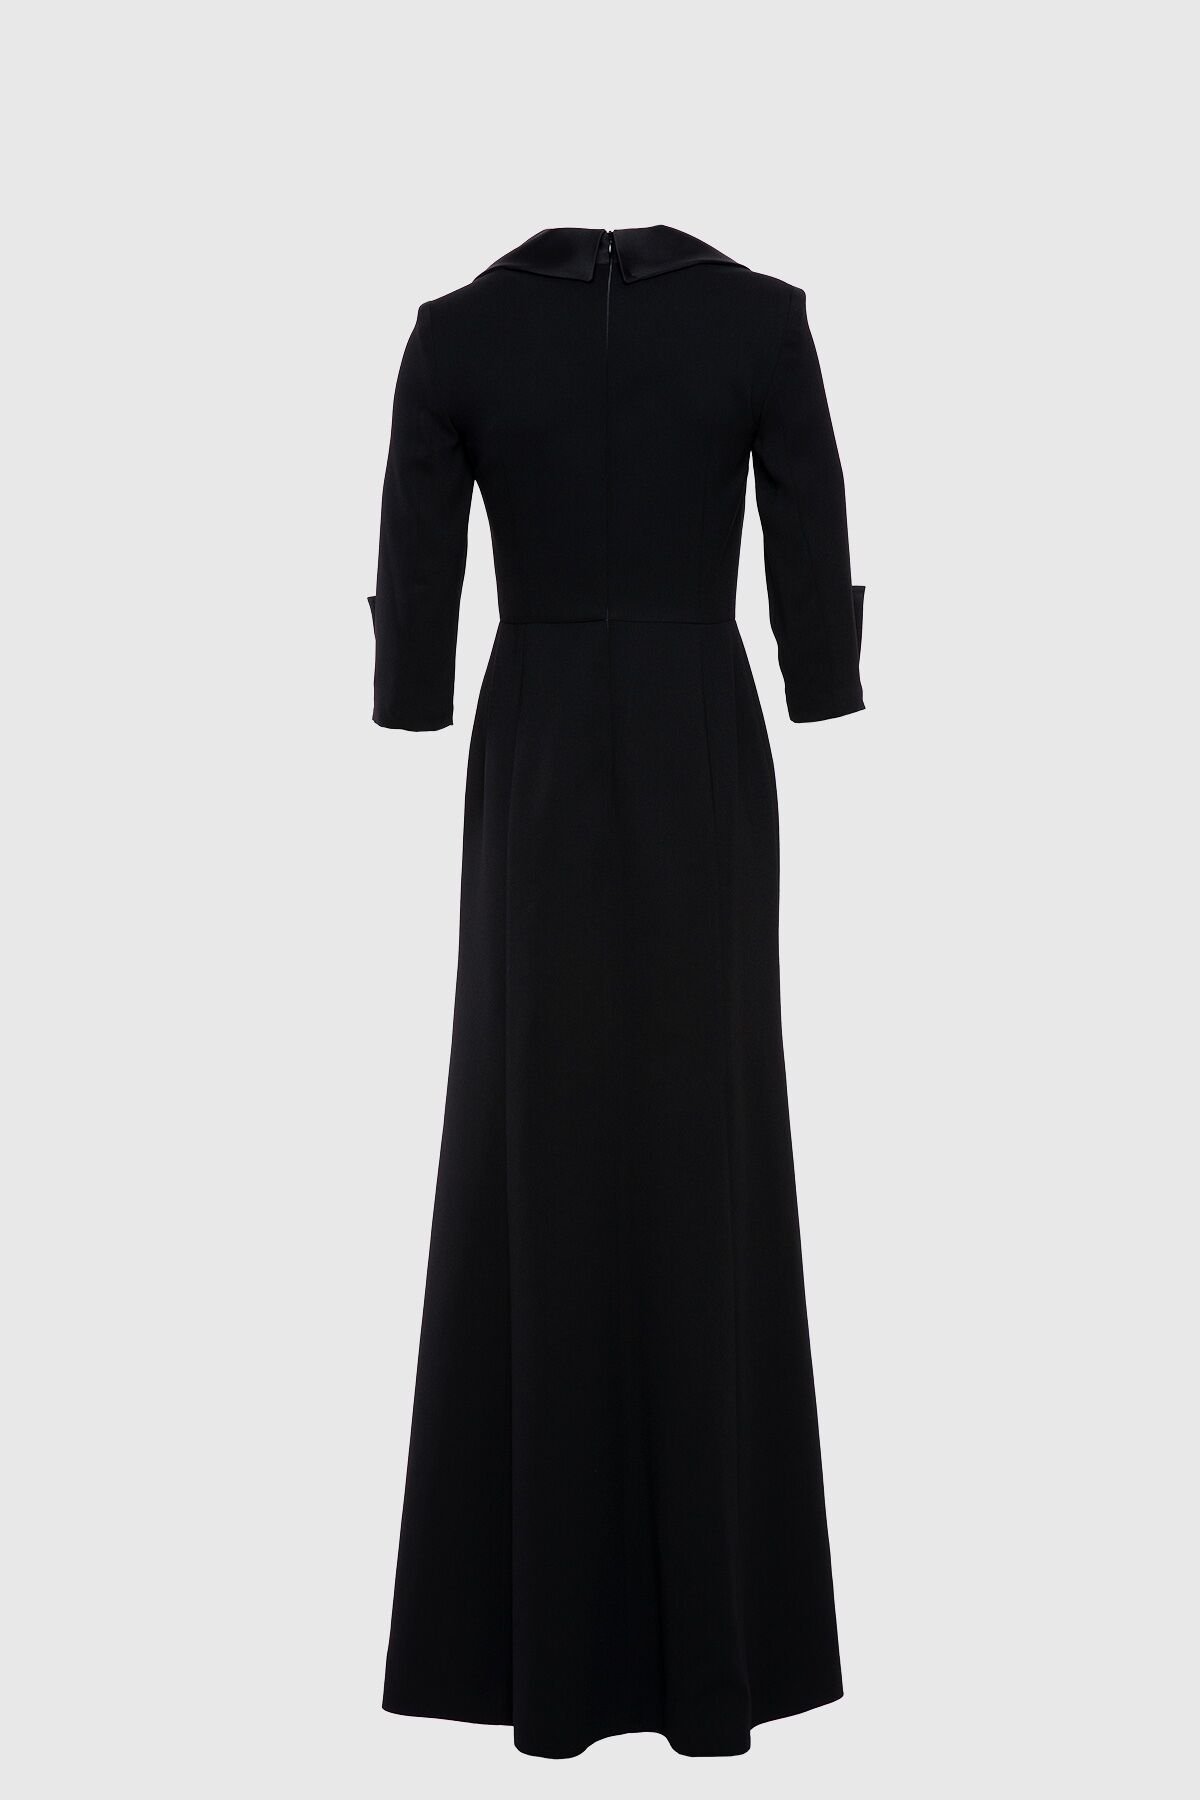 Yaka Ve Kol Detaylı Yakası İşlemeli Şık Siyah Abiye Elbise